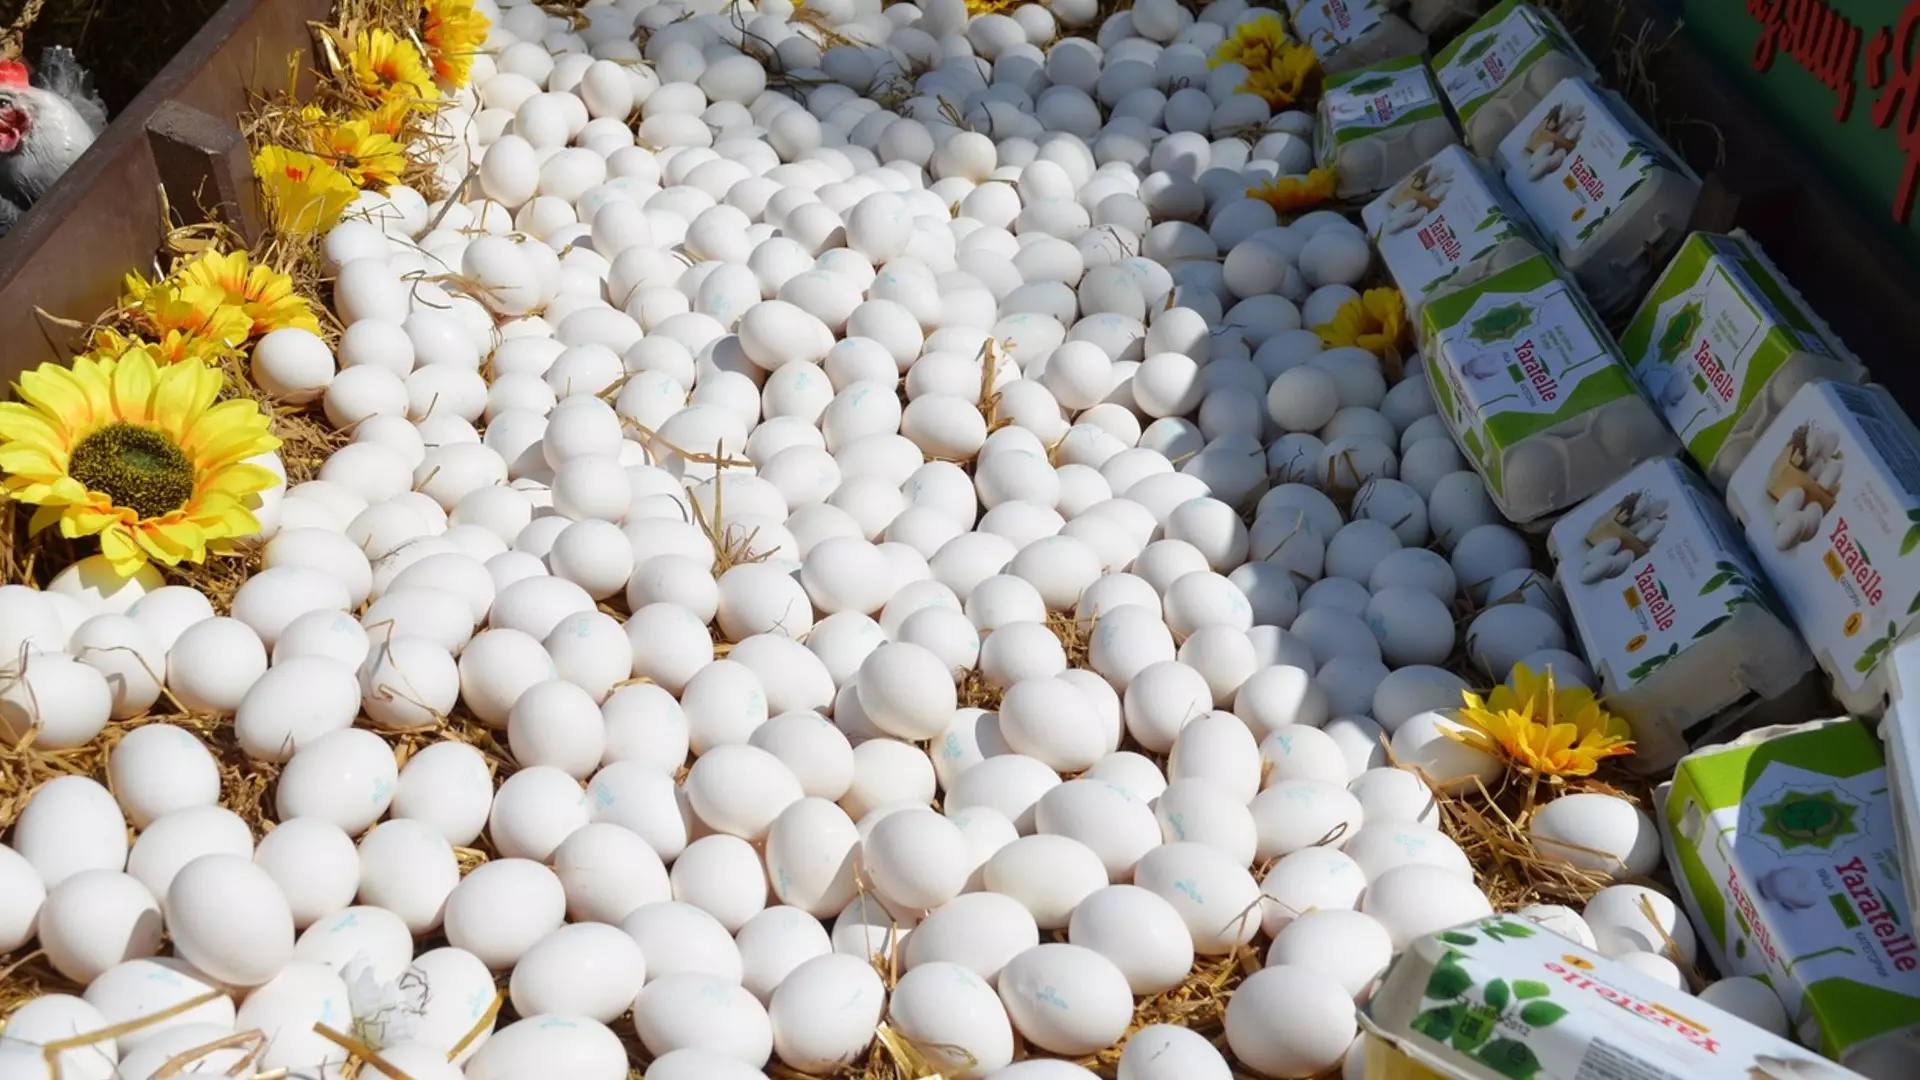 ФАС проверяет цены на яйца в крупных торговых сетях России